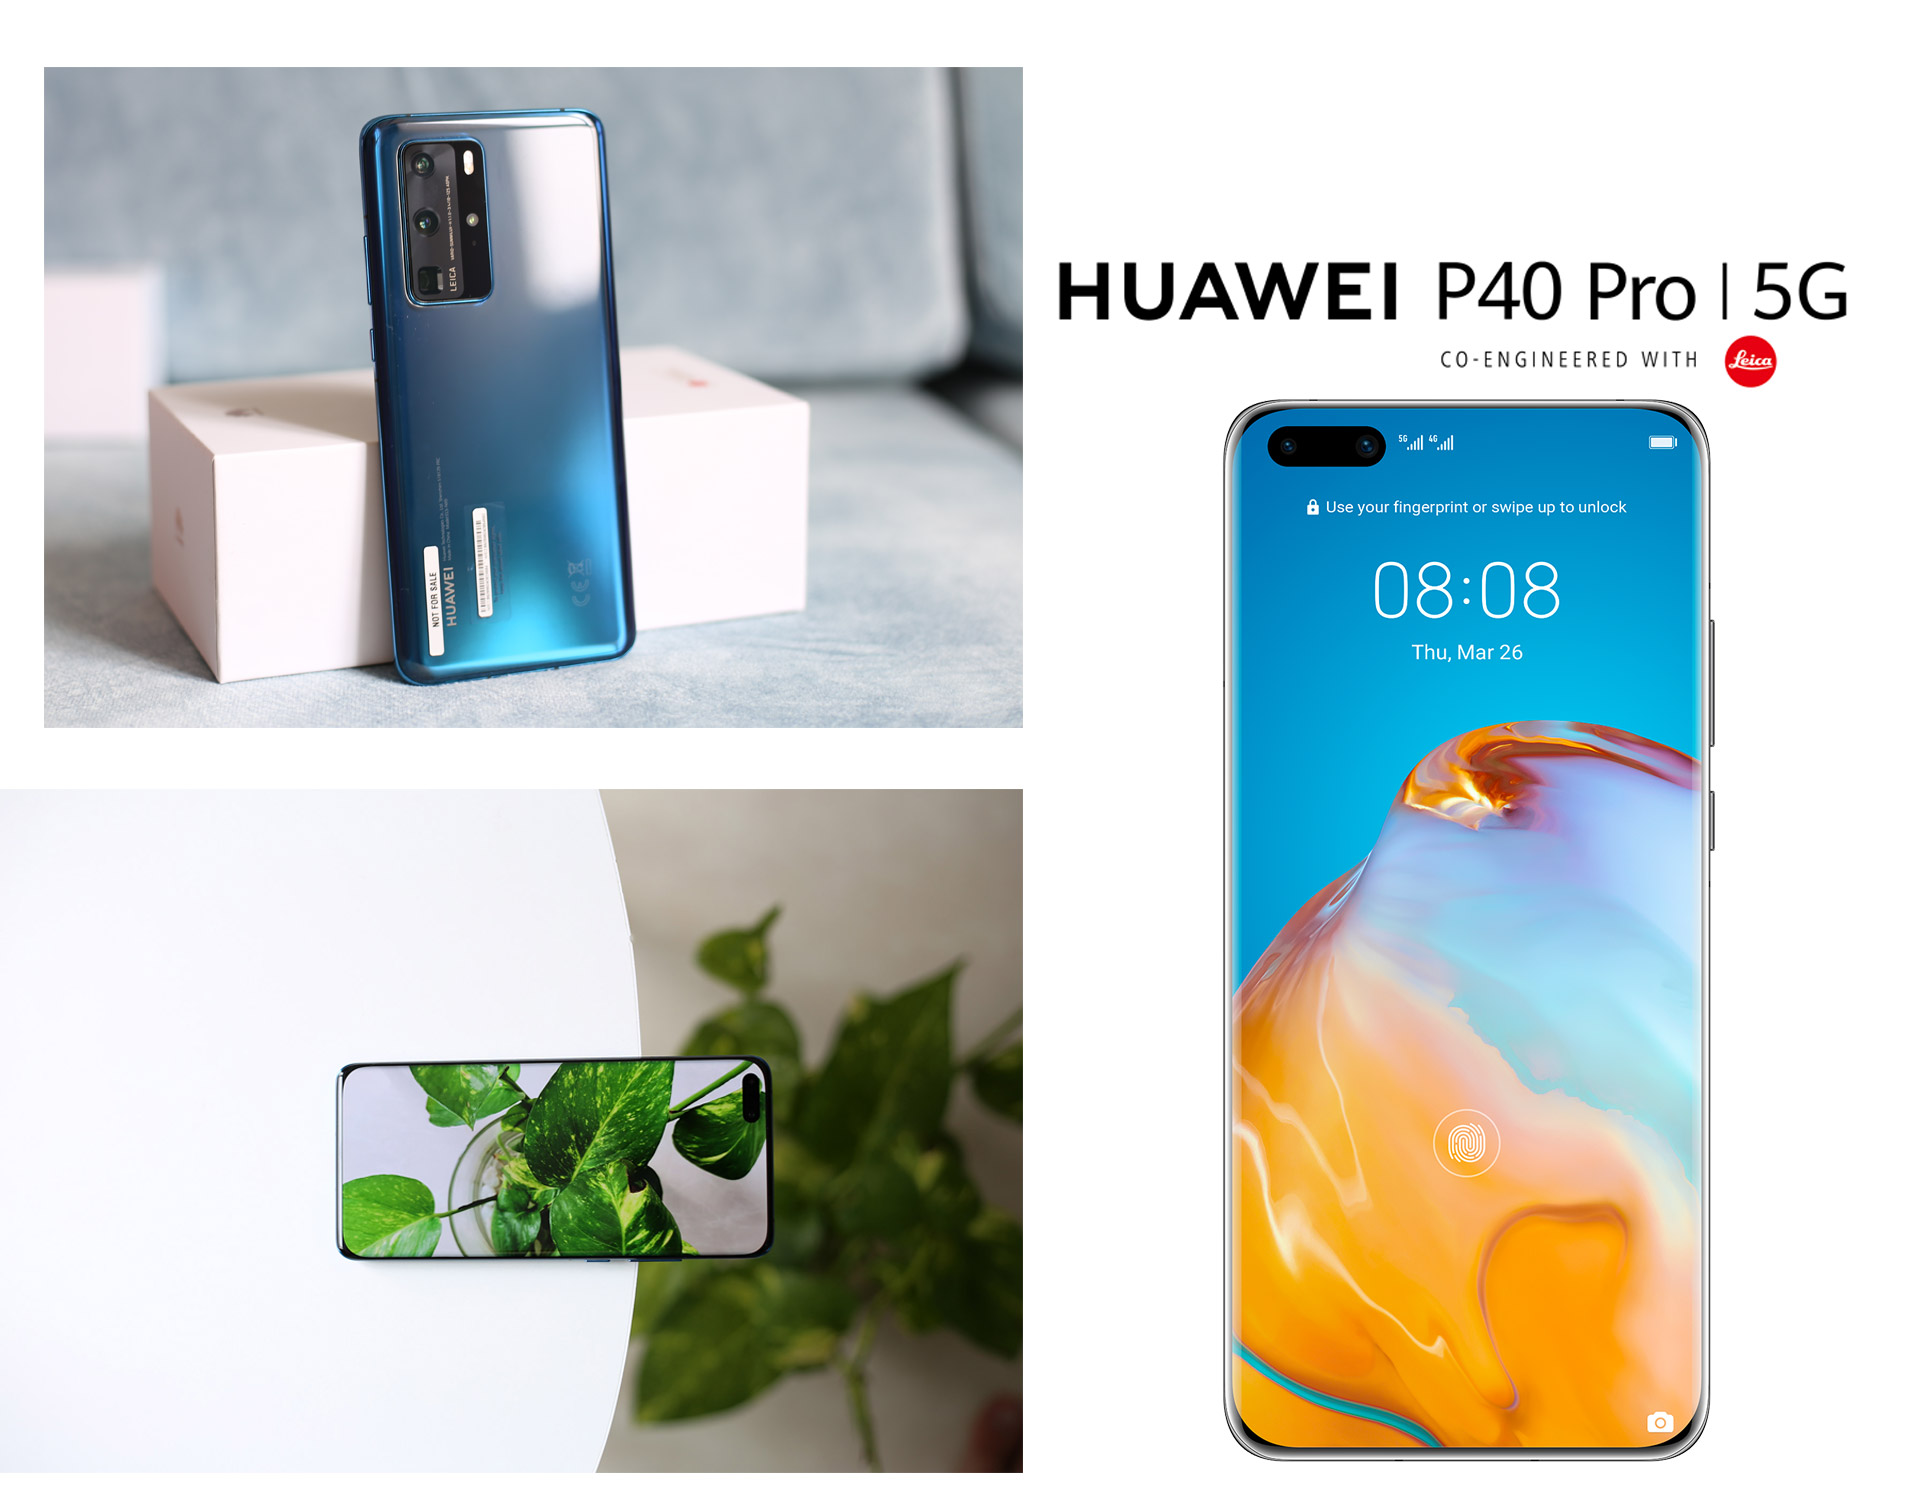 Huawei P40 Pro: Siêu phẩm camera phone đón đầu kỷ nguyên 5G - 12